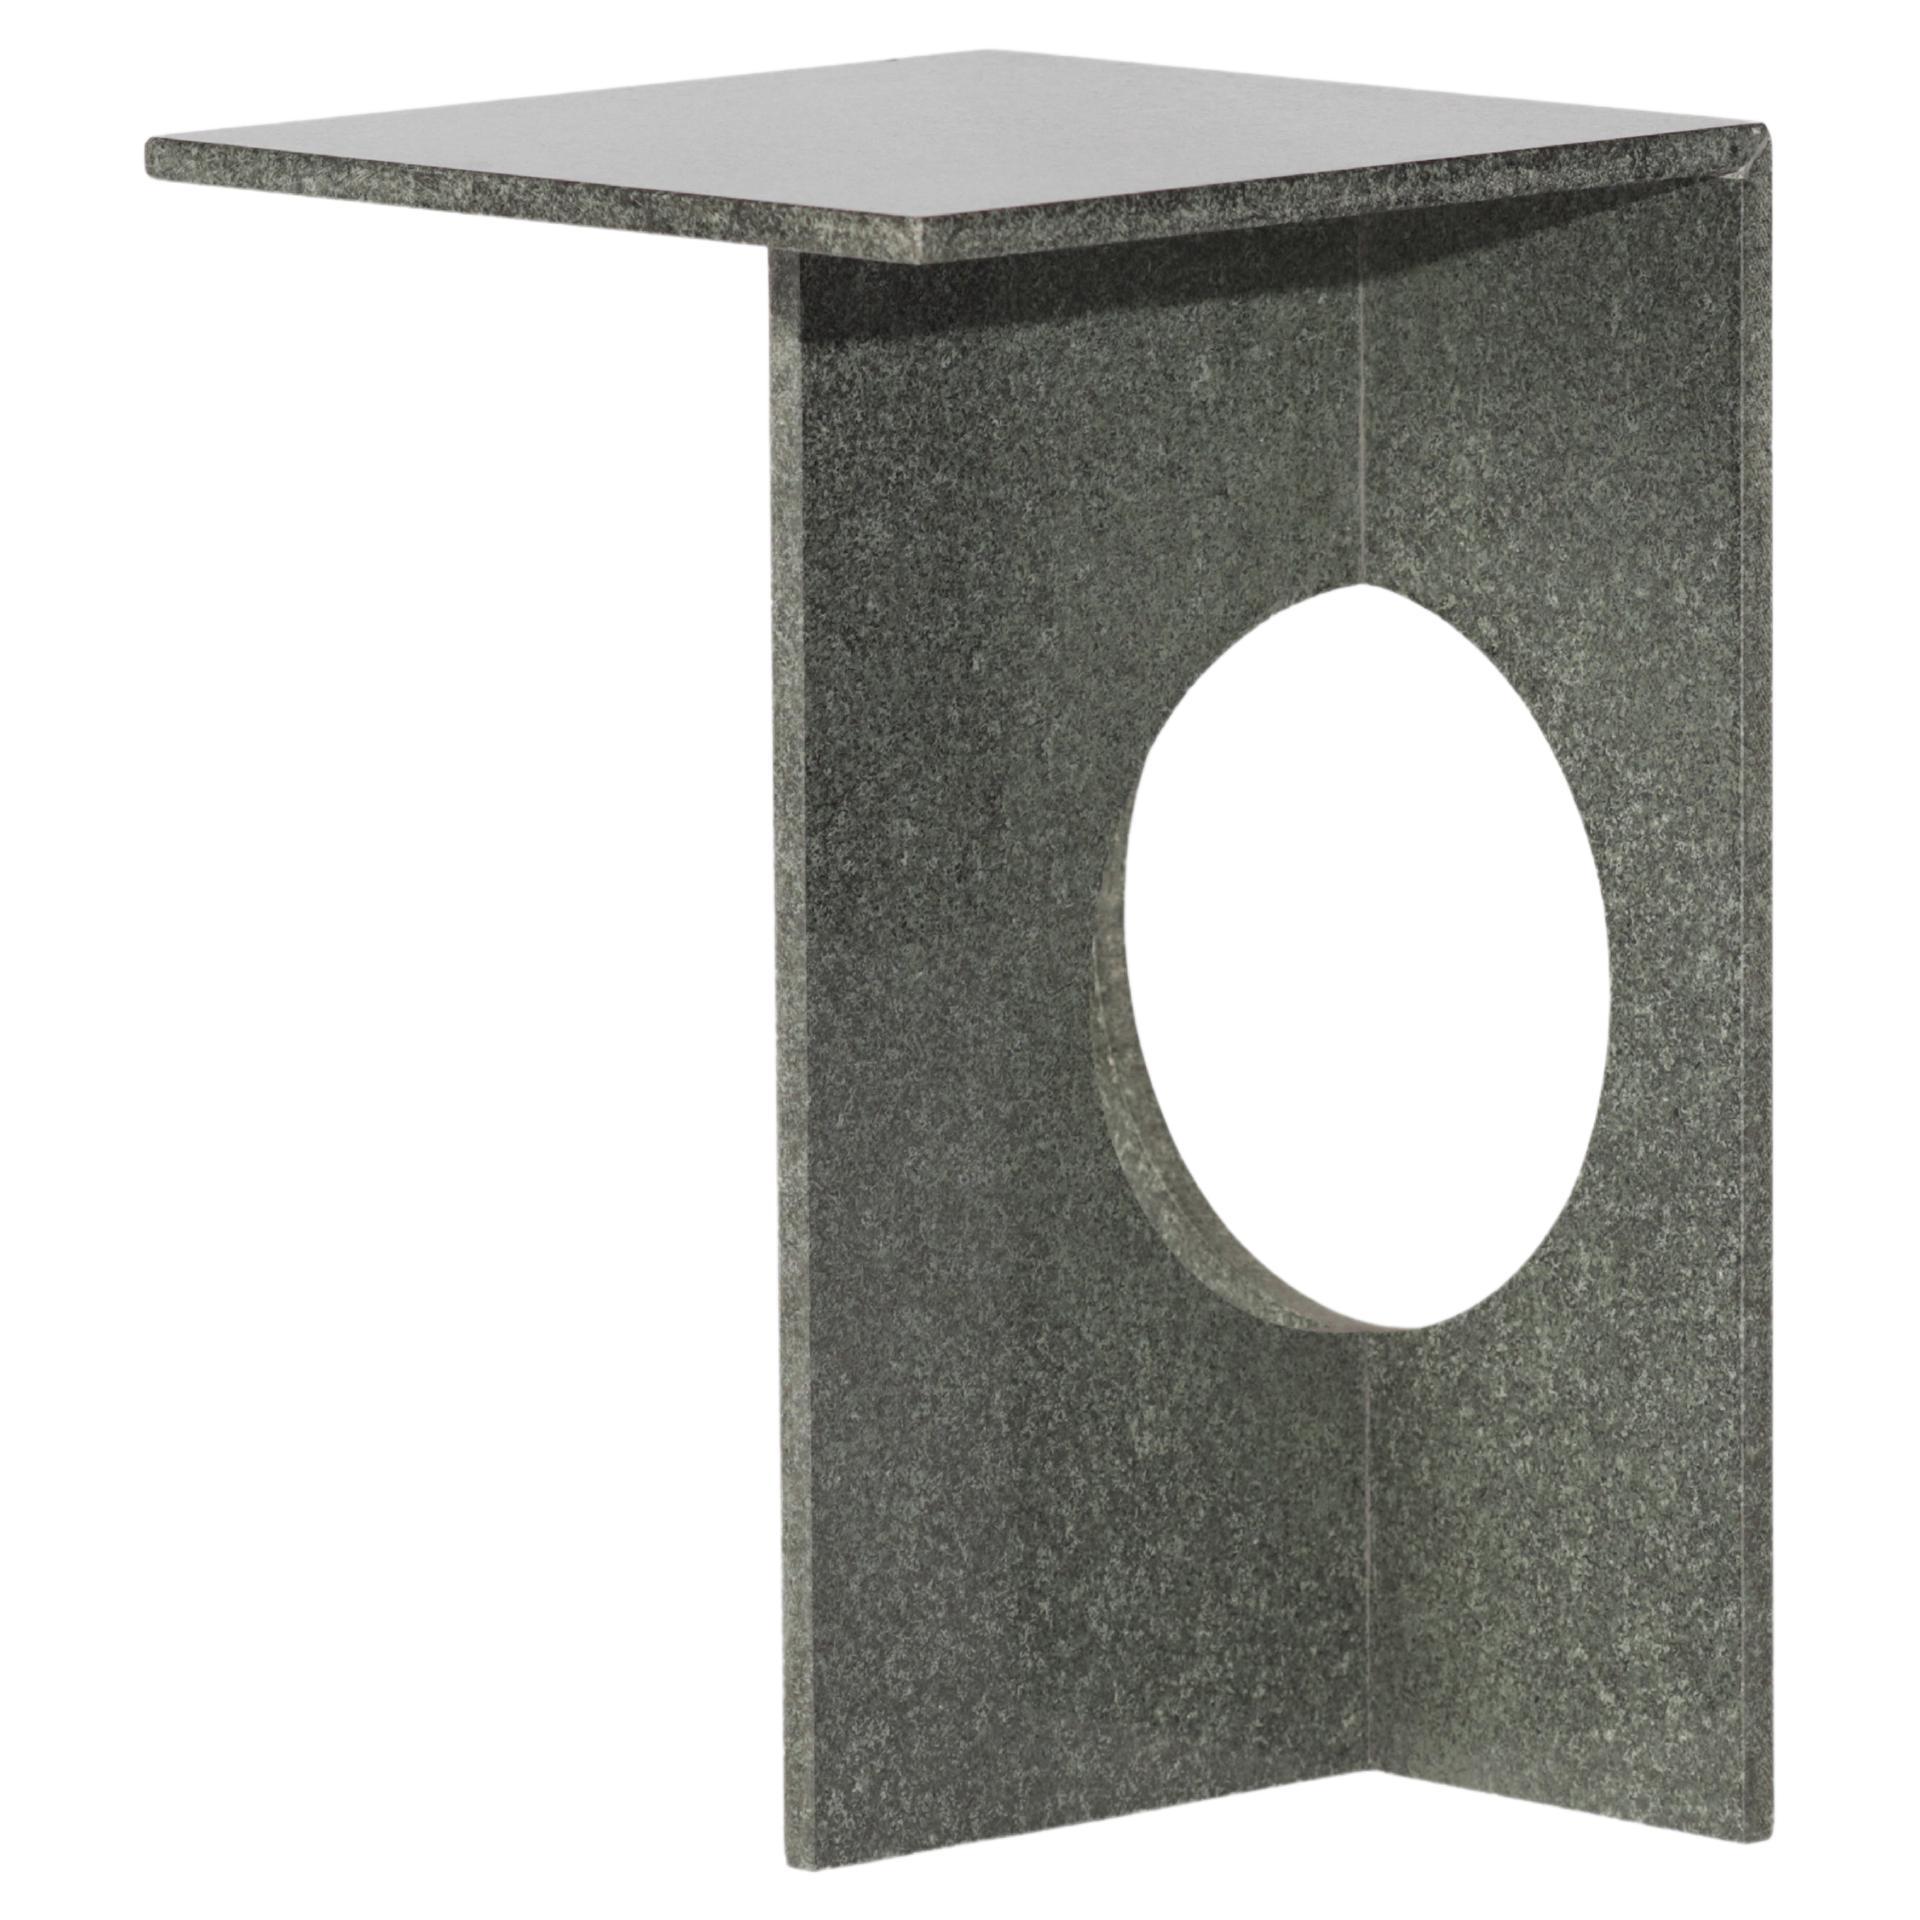 Table d'appoint Ola, pierre à base verte polie, Studio Mohs